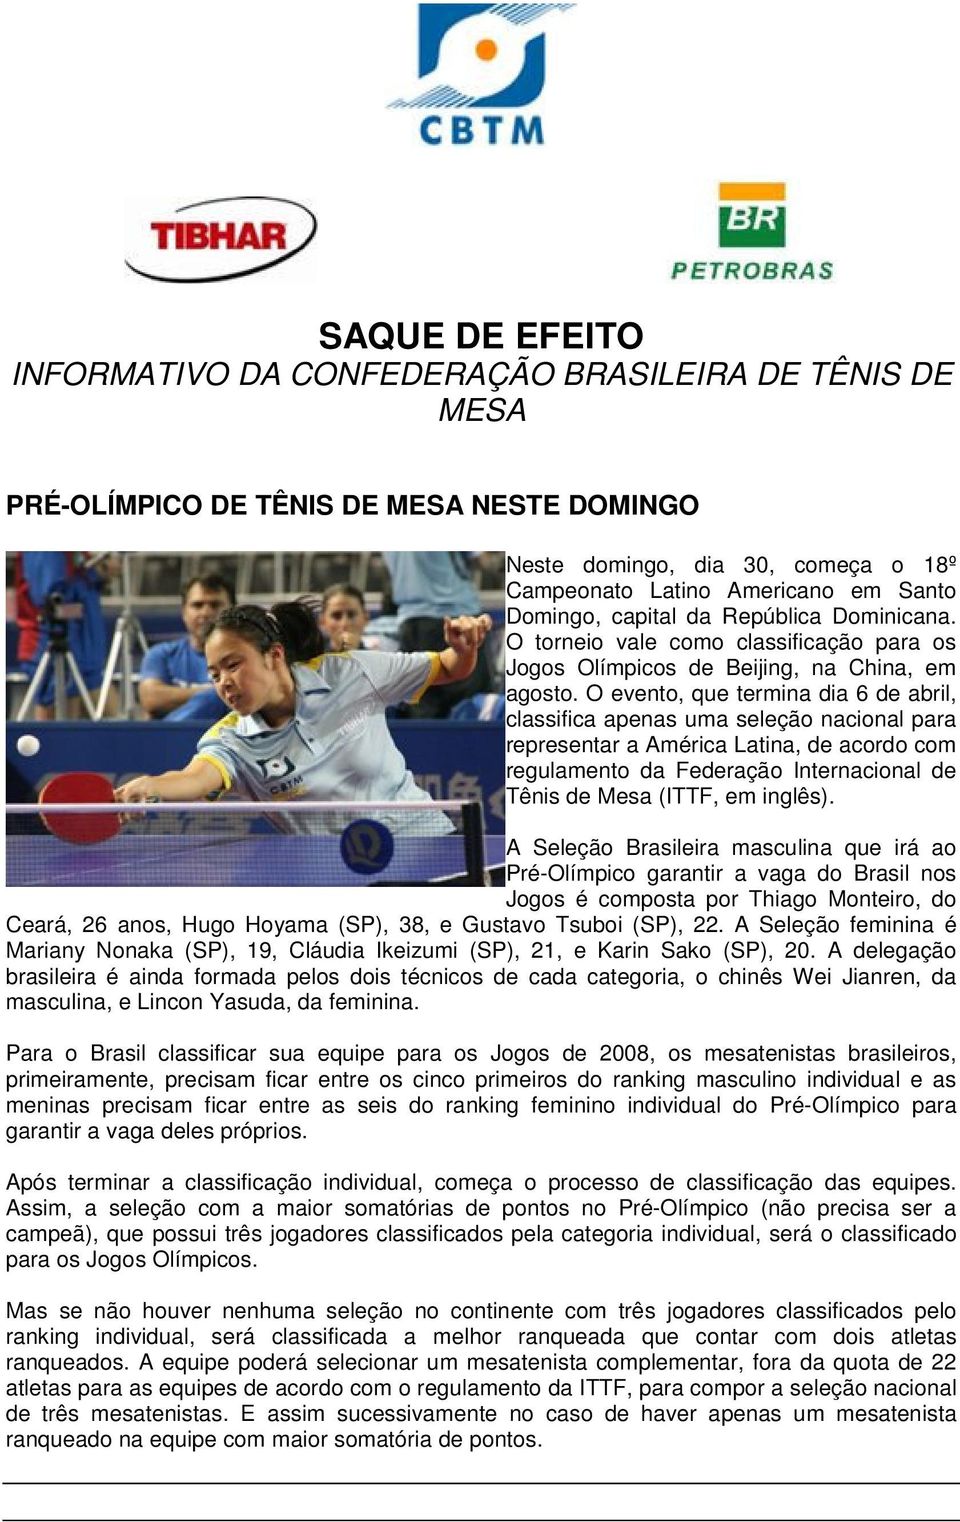 O evento, que termina dia 6 de abril, classifica apenas uma seleção nacional para representar a América Latina, de acordo com regulamento da Federação Internacional de Tênis de Mesa (ITTF, em inglês).